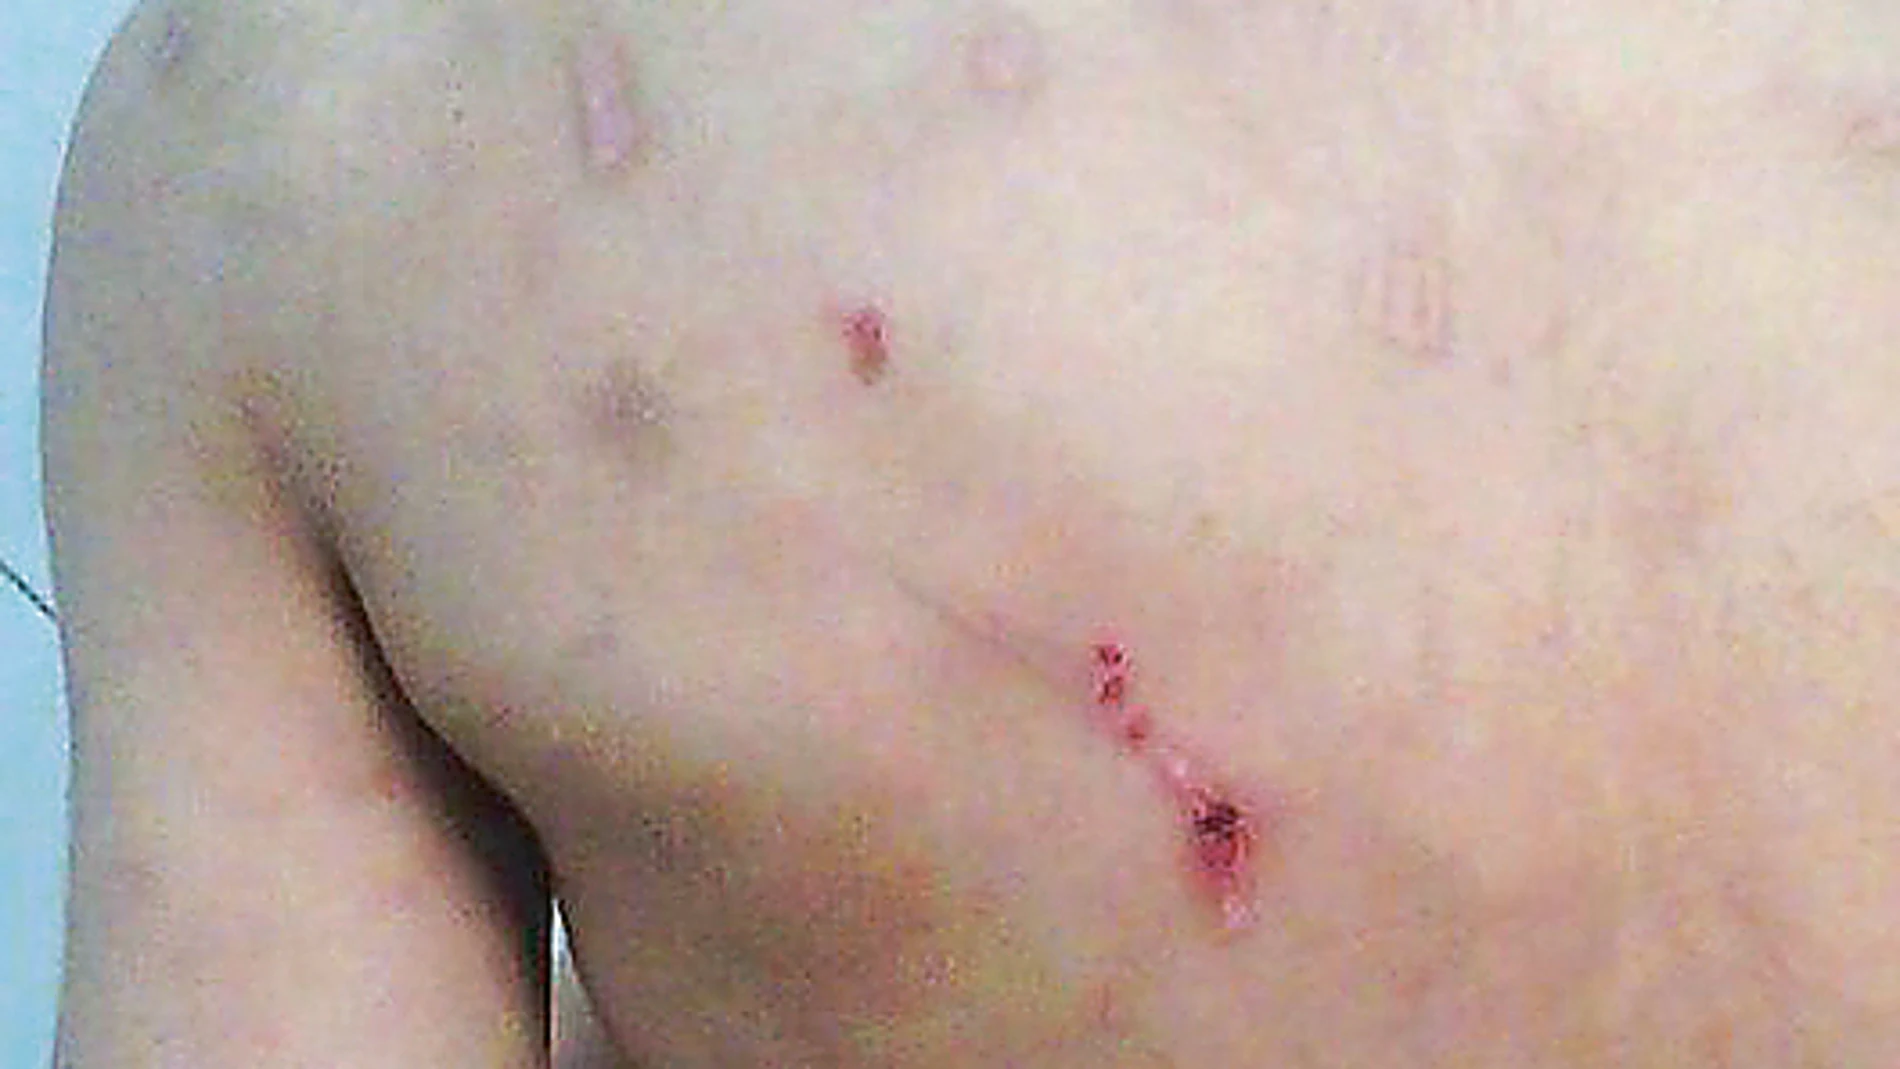 La violencia que sufren algunos de los niños que atiende Doñoro se refleja en sus cuerpos, llenos de heridas y de moretones producto de los abusos